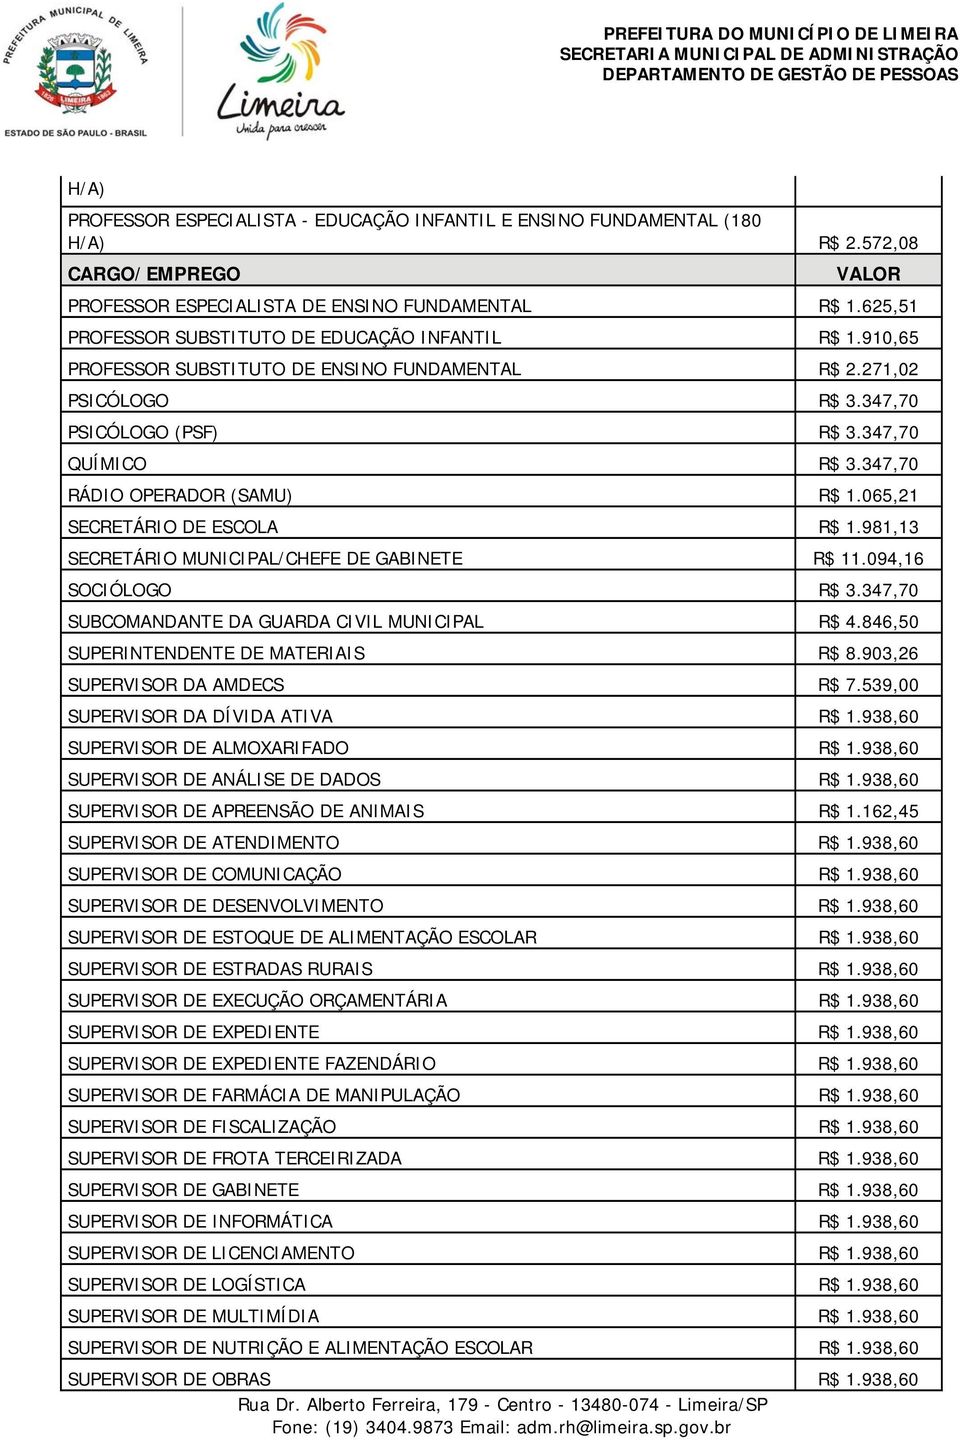 981,13 SECRETÁRIO MUNICIPAL/CHEFE DE GABINETE R$ 11.094,16 SOCIÓLOGO R$ 3.347,70 SUBCOMANDANTE DA GUARDA CIVIL MUNICIPAL R$ 4.846,50 SUPERINTENDENTE DE MATERIAIS R$ 8.903,26 SUPERVISOR DA AMDECS R$ 7.